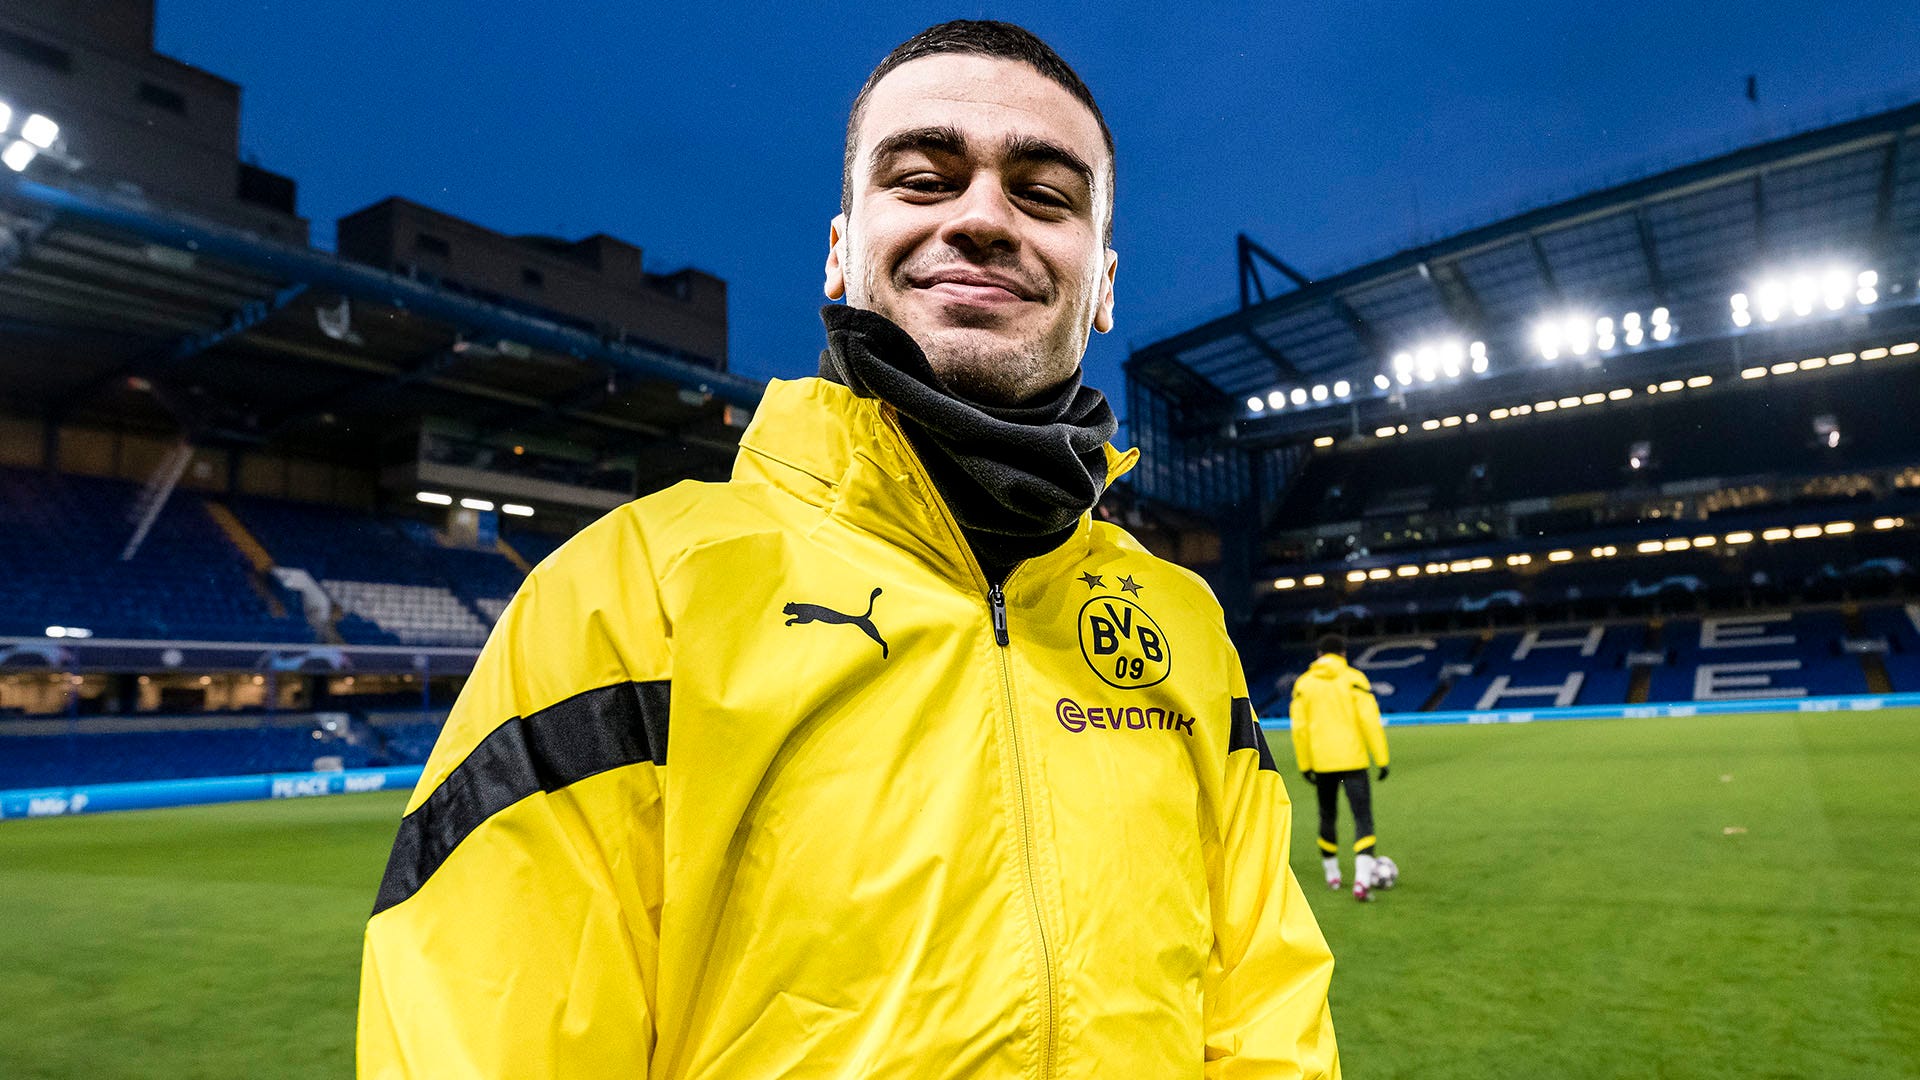 Gio Reyna smile Dortmund Chelsea